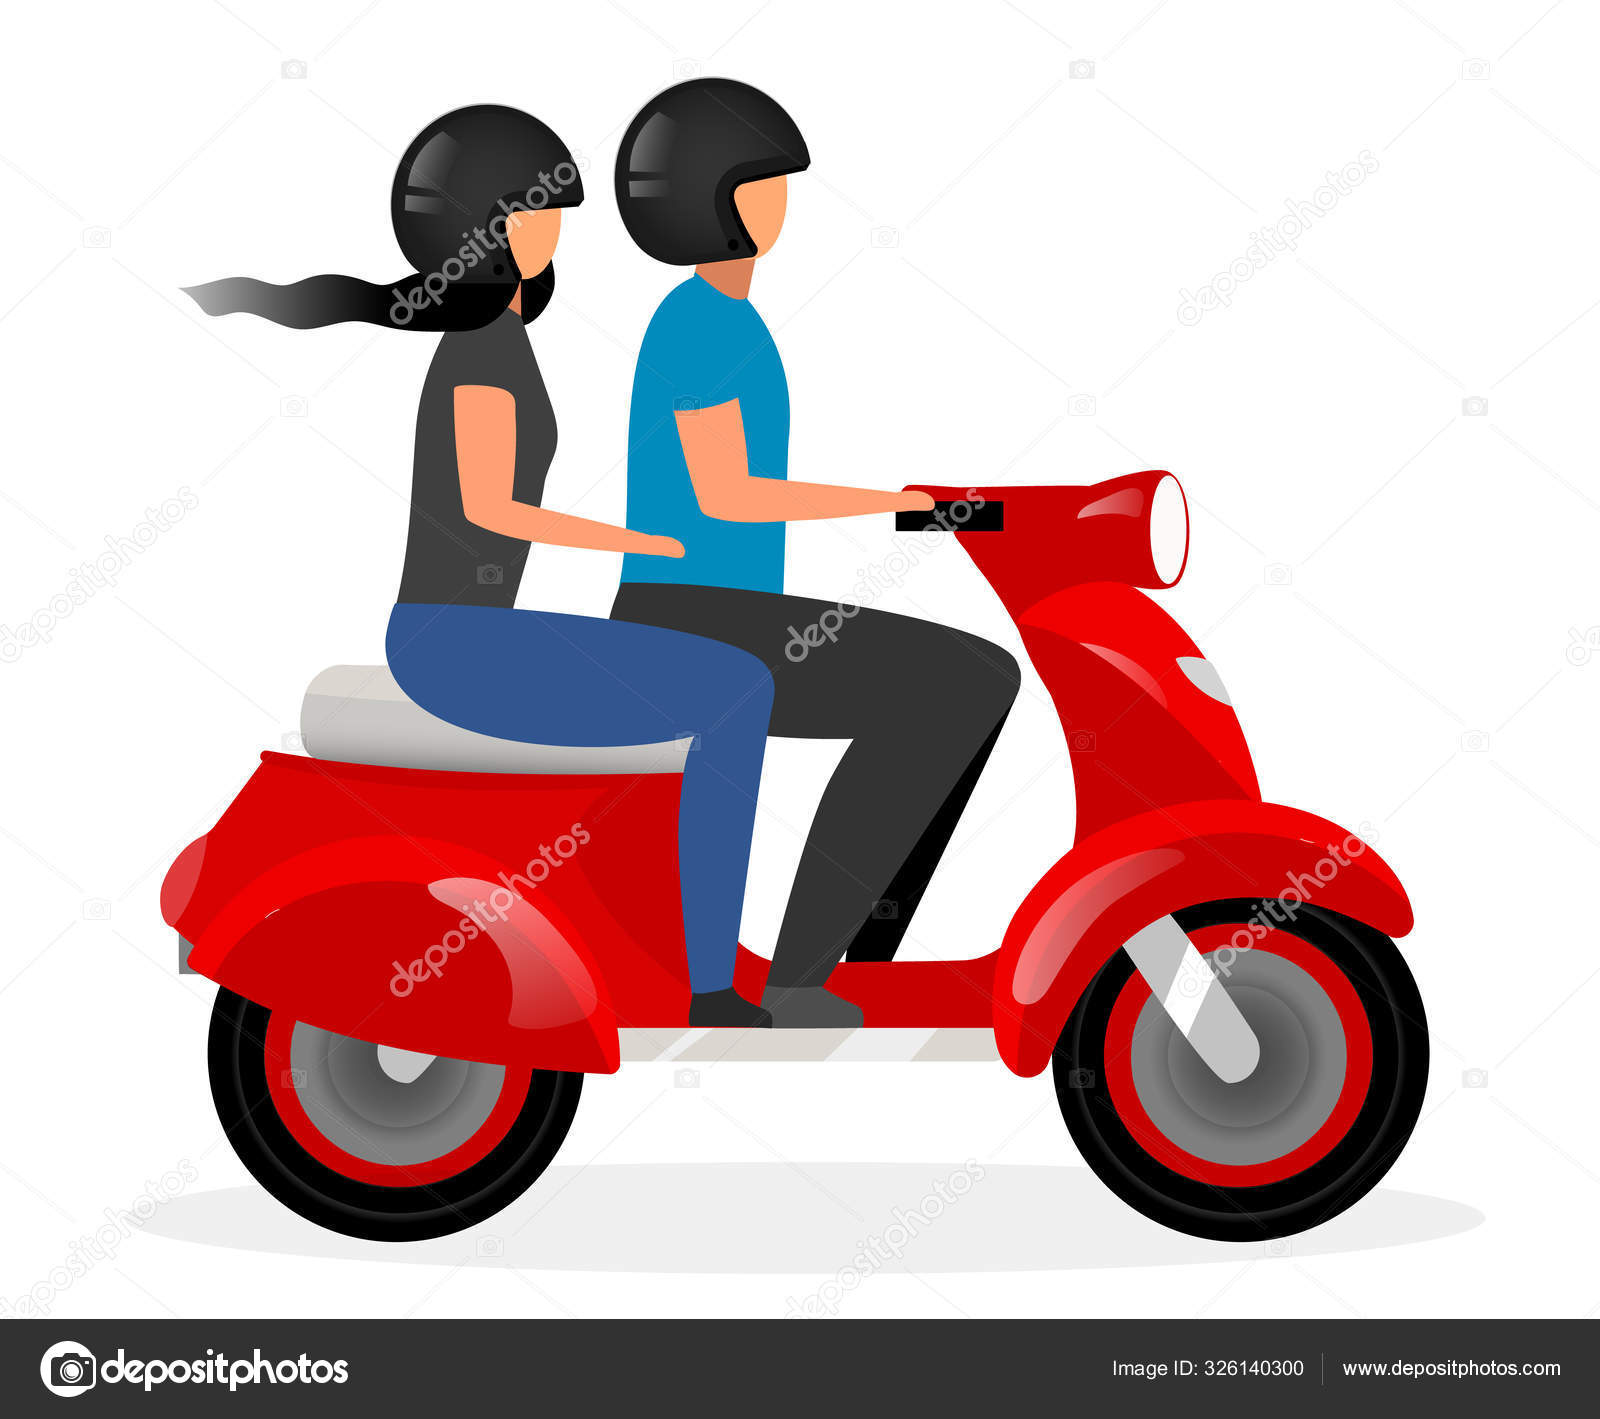 Conjunto de vários itens planos de motos. motos de desenho animado,  motocicletas, scooters e coleção de ilustração vetorial isolado de  bicicletas. conceito de transporte e entrega